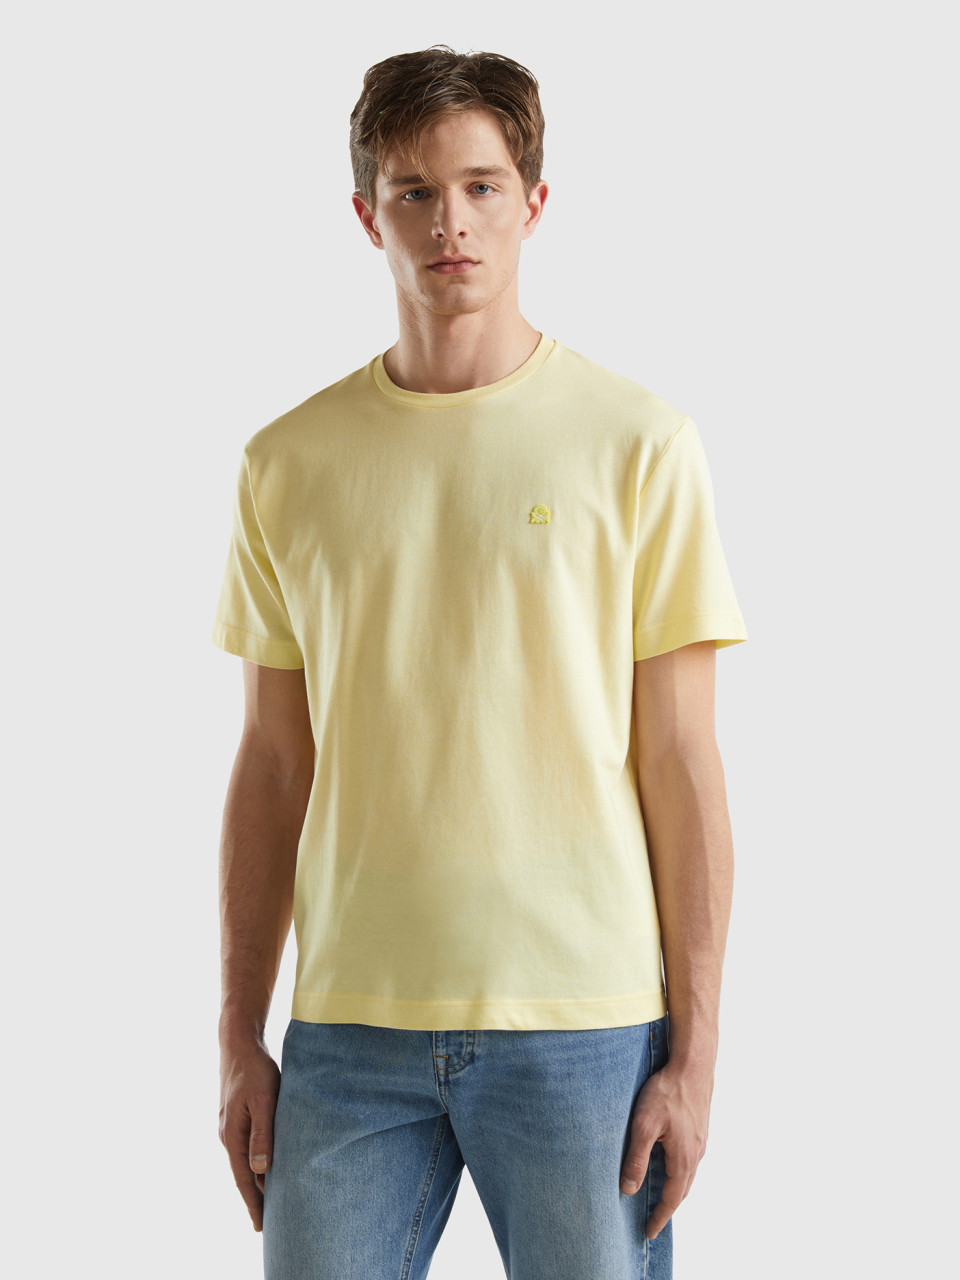 Benetton, Camiseta De Micropiqué, Amarillo, Hombre